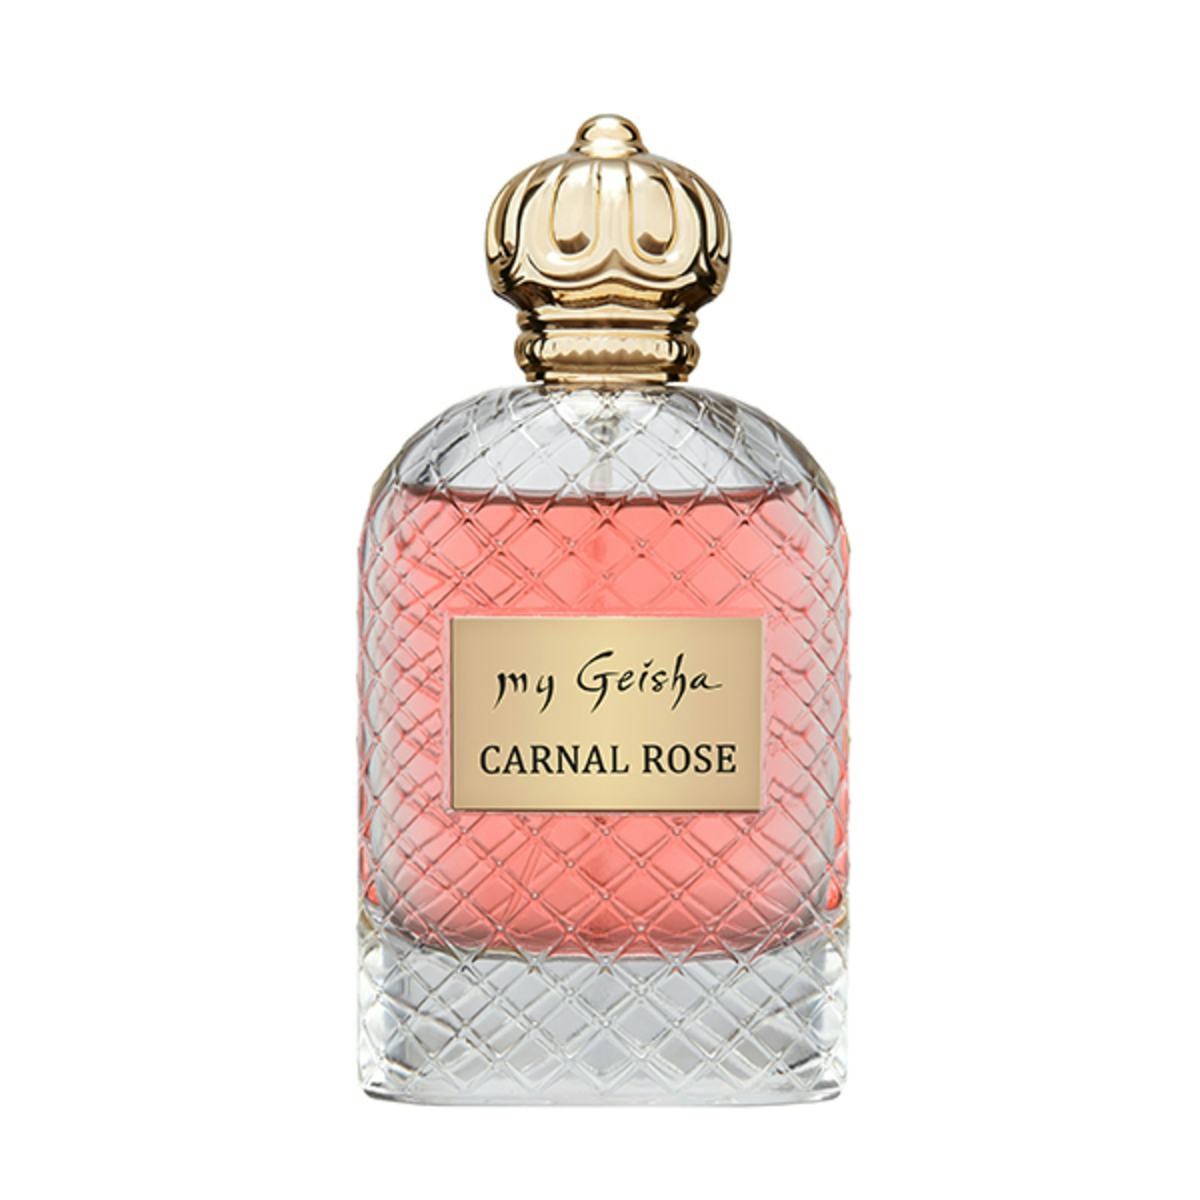 Extrait de parfum Carnal Rose 100ml, produit artisanal en vente directe en Suisse